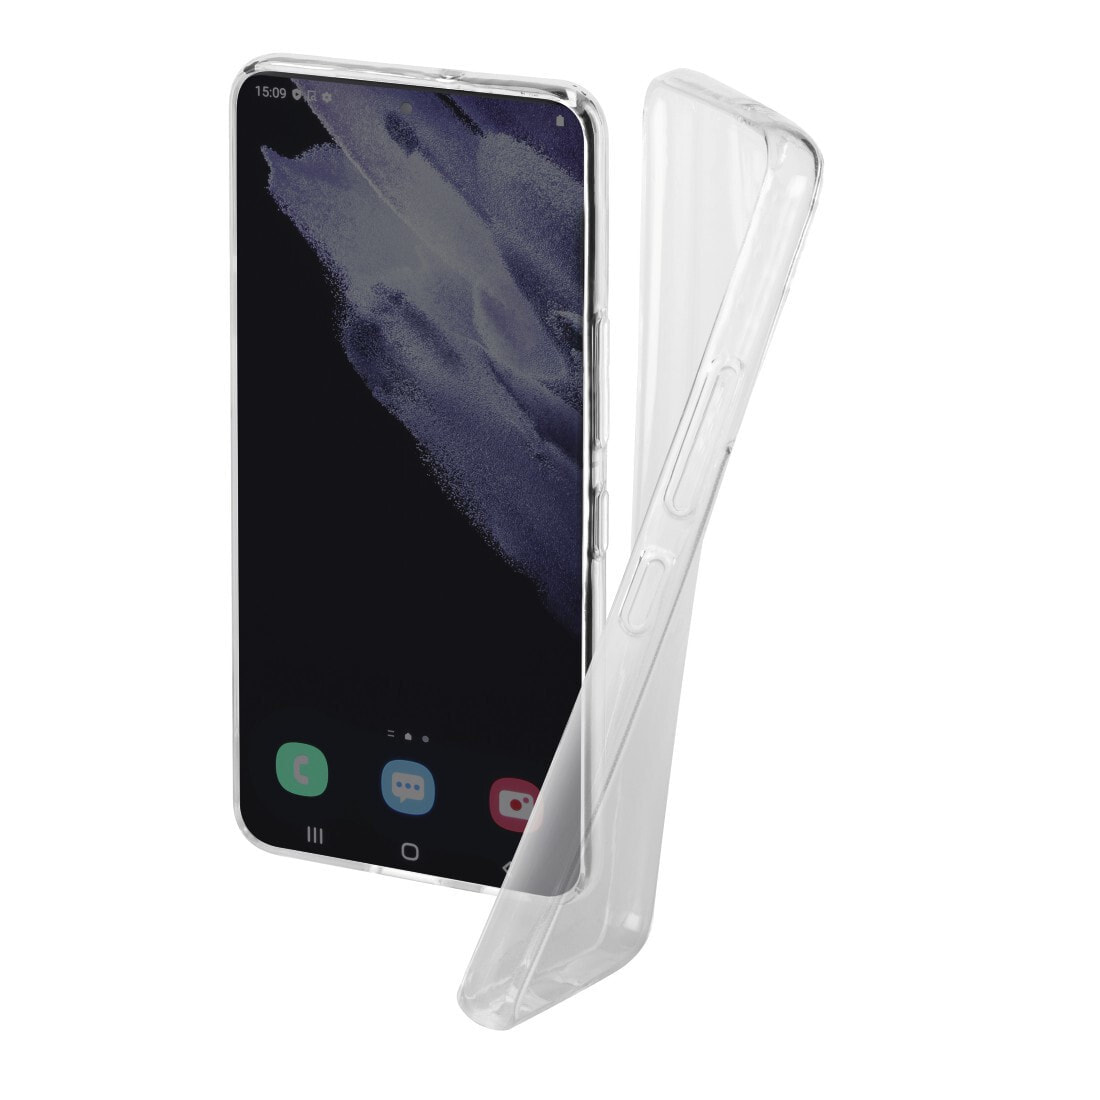 Hama Crystal Clear чехол для мобильного телефона Крышка Прозрачный 00172334